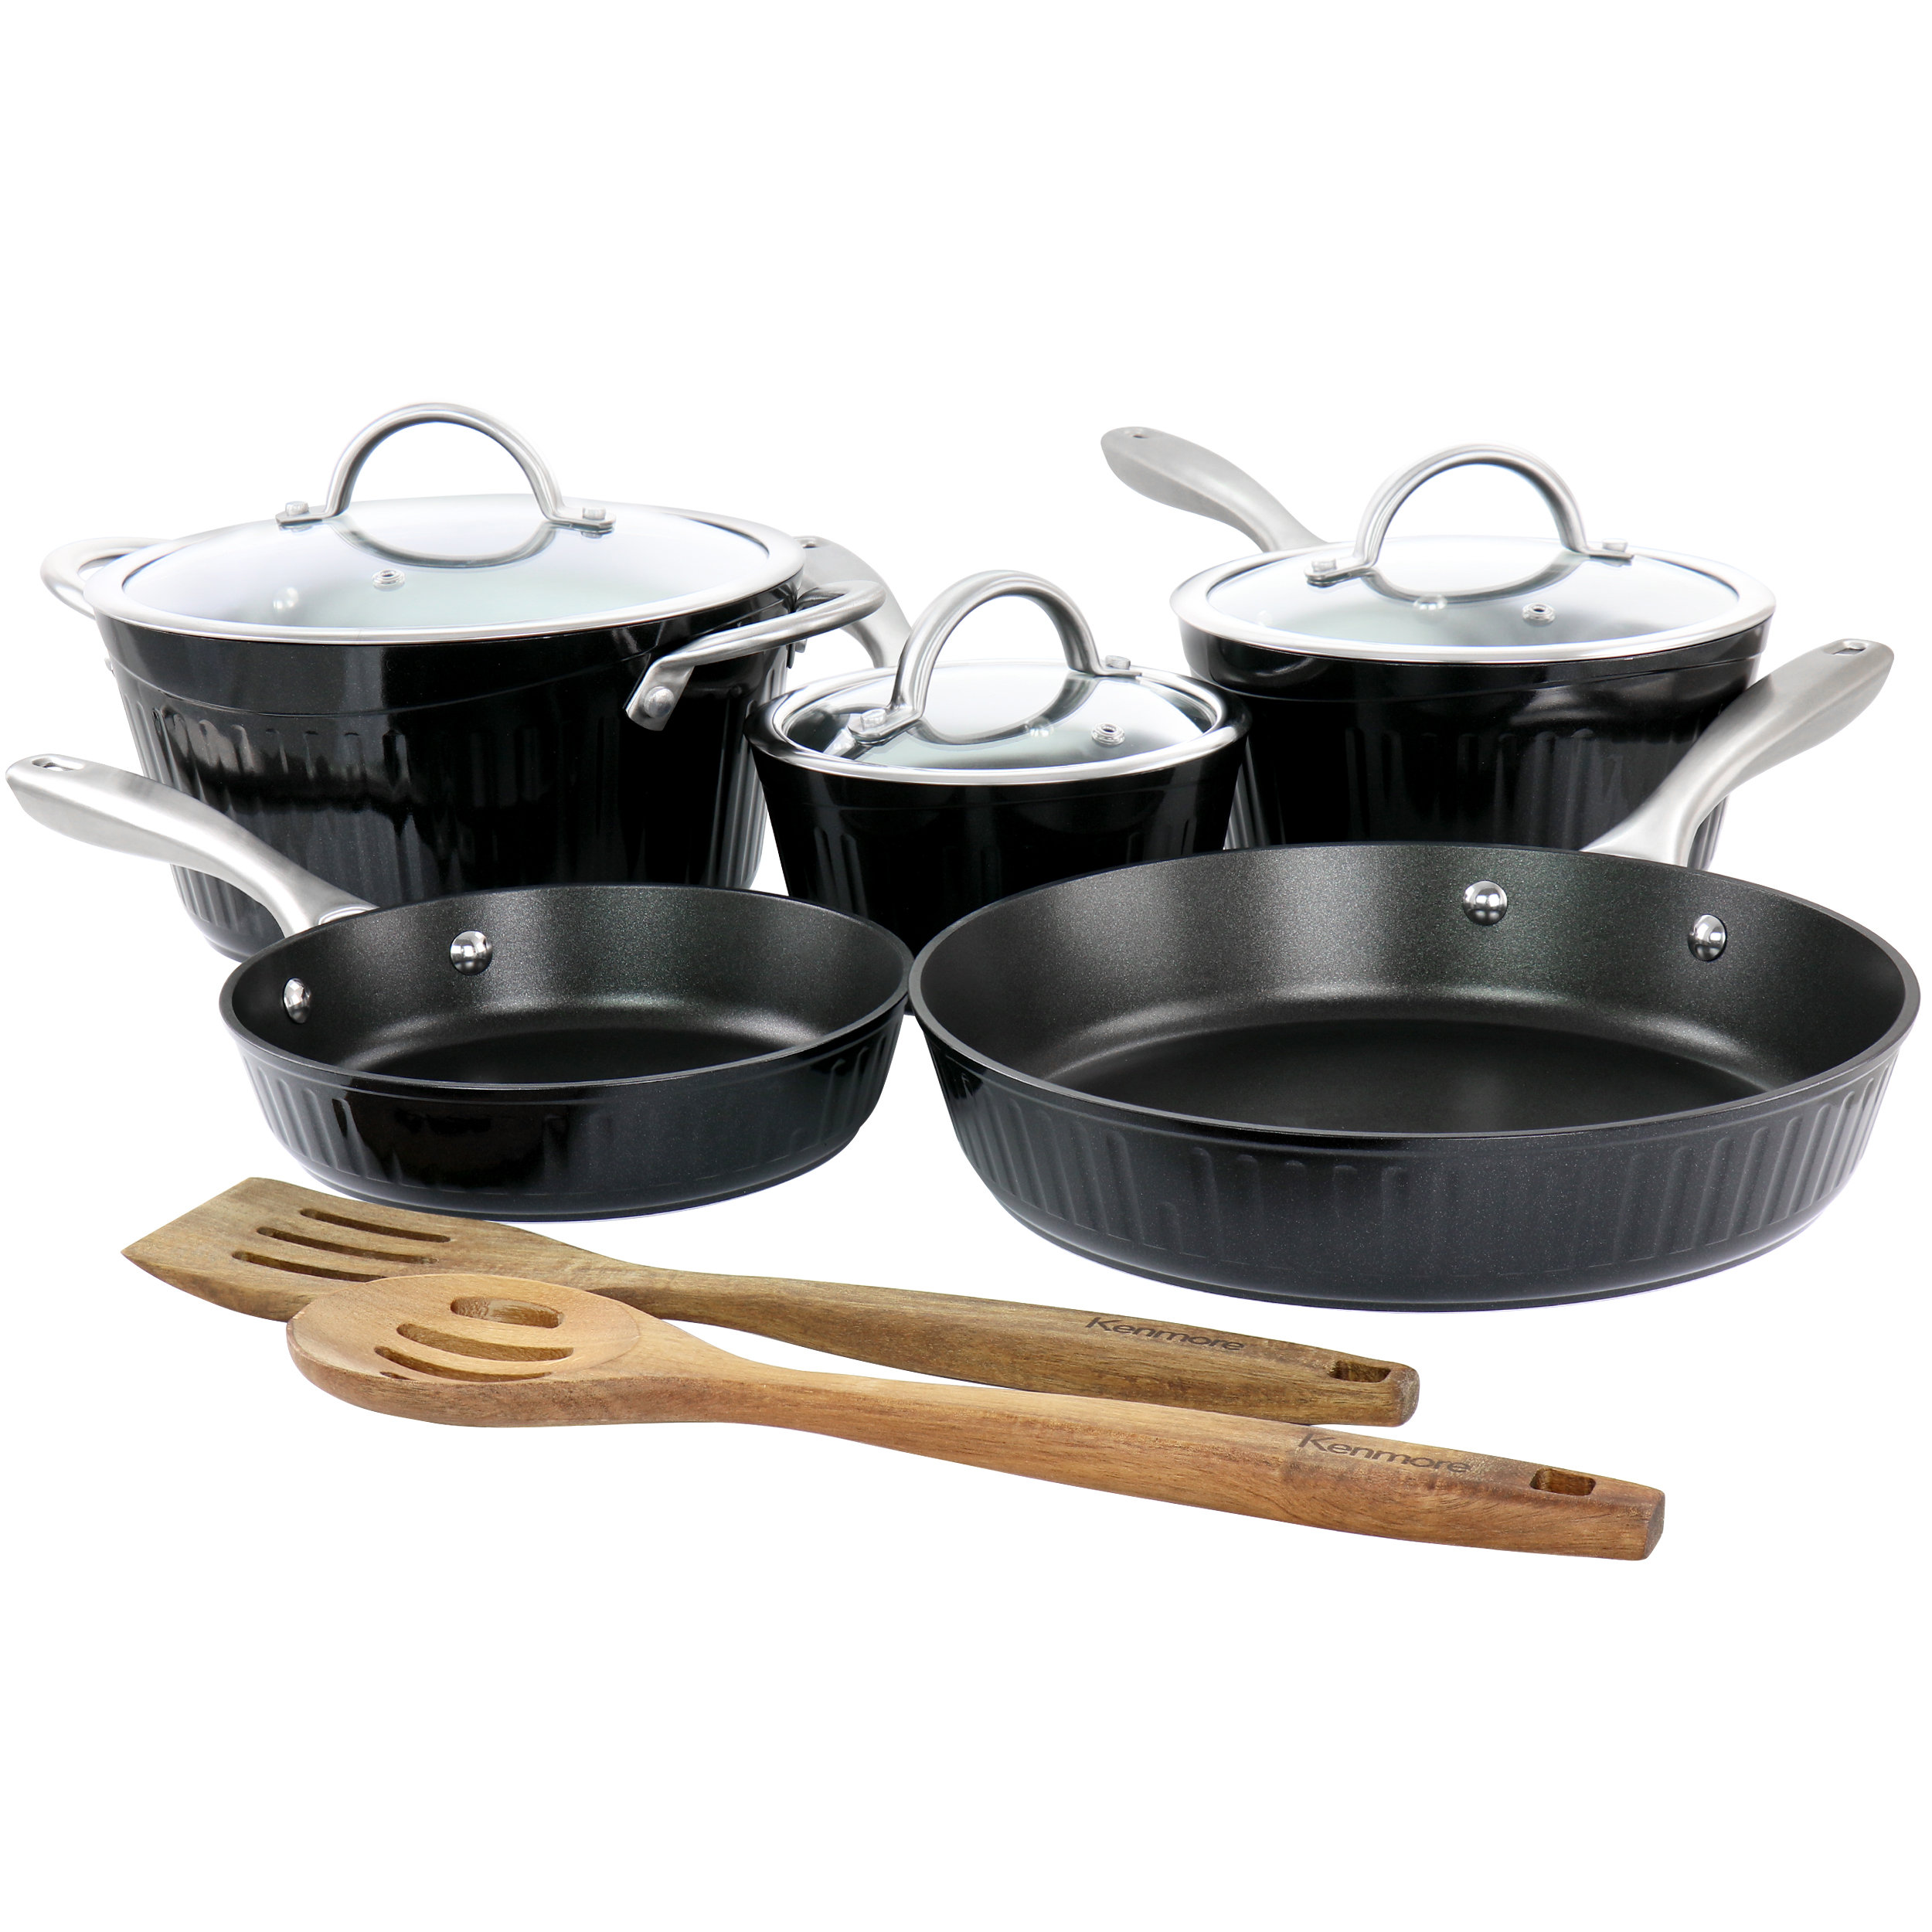 https://assets.wfcdn.com/im/99647166/compr-r85/2231/223154902/10-piece-non-stick-aluminum-cookware-set.jpg